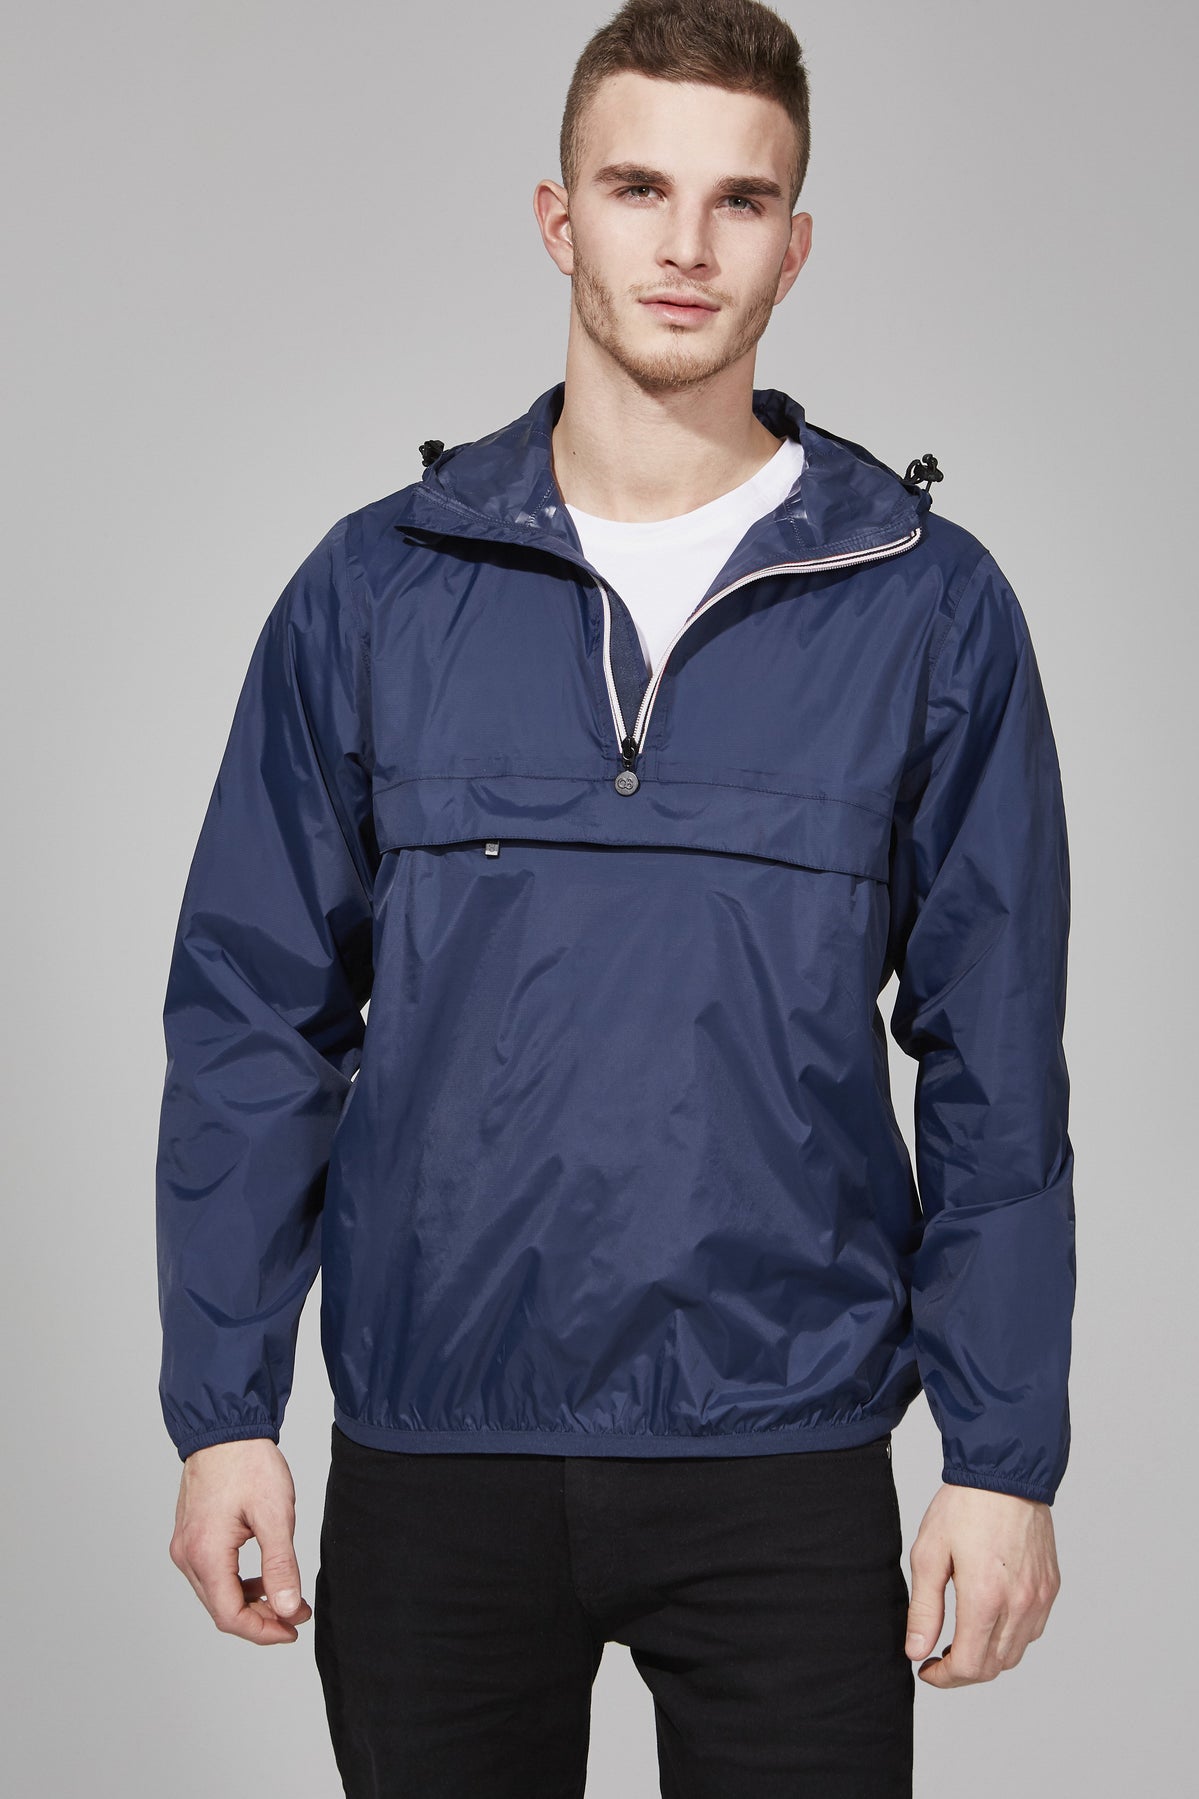 Men's navy quarter zip packable rain jacket and windbreaker - O8Lifestyle